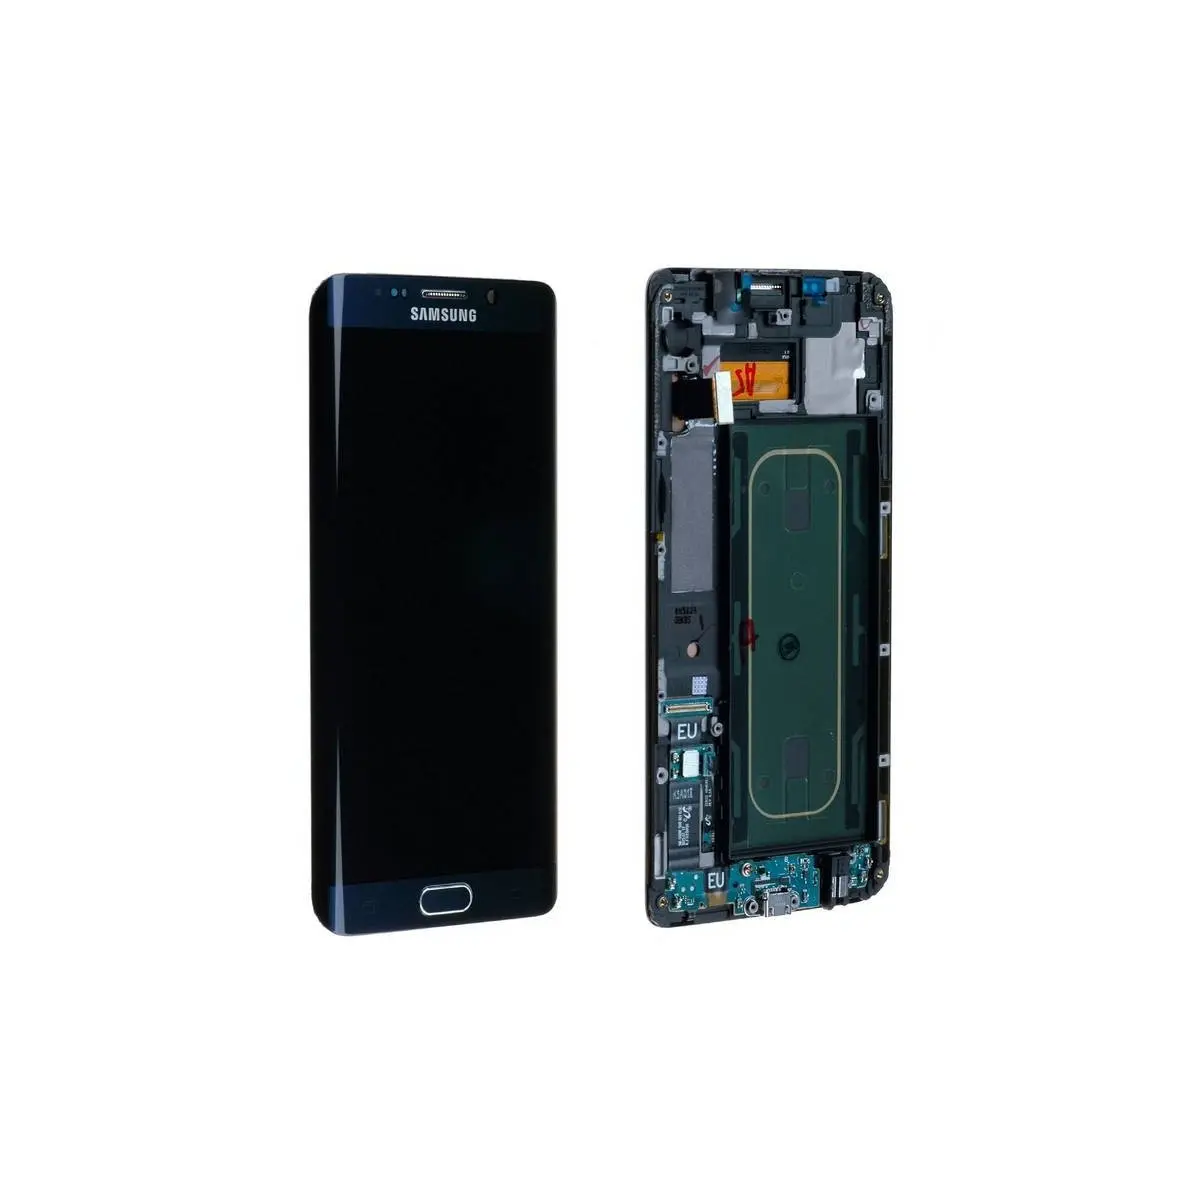 samsung s6 pantalla negra - Cómo se reinicia un Samsung Galaxy s6